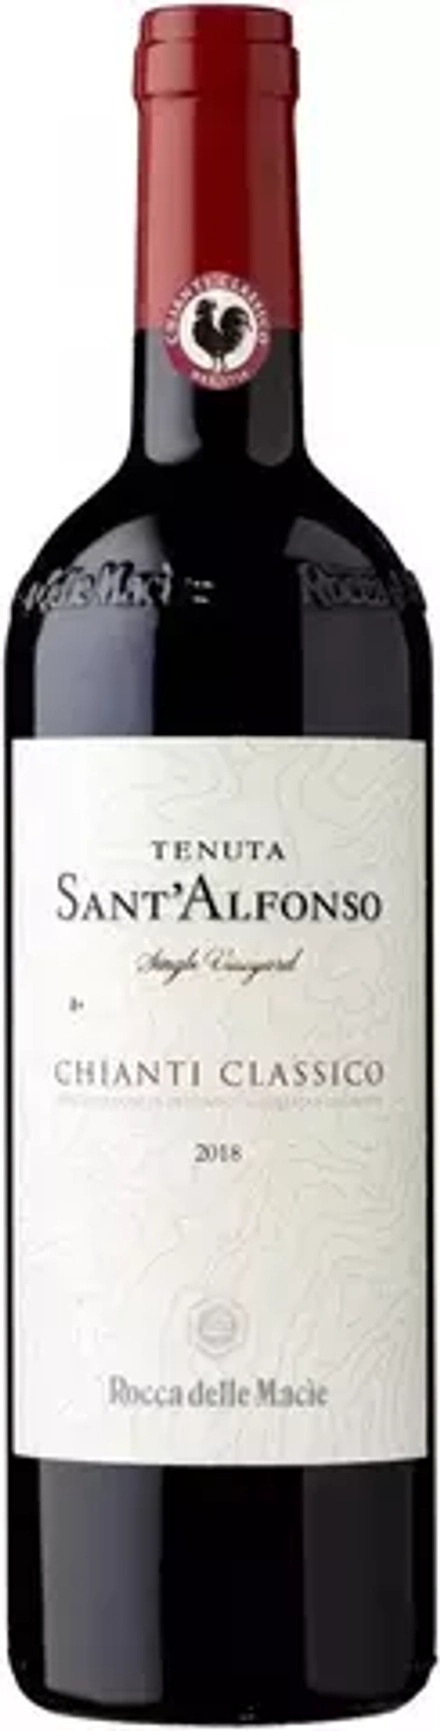 Вино Rocca delle Macie Tenuta Sant'Alfonso Chianti Classico DOCG, 0,75 л.